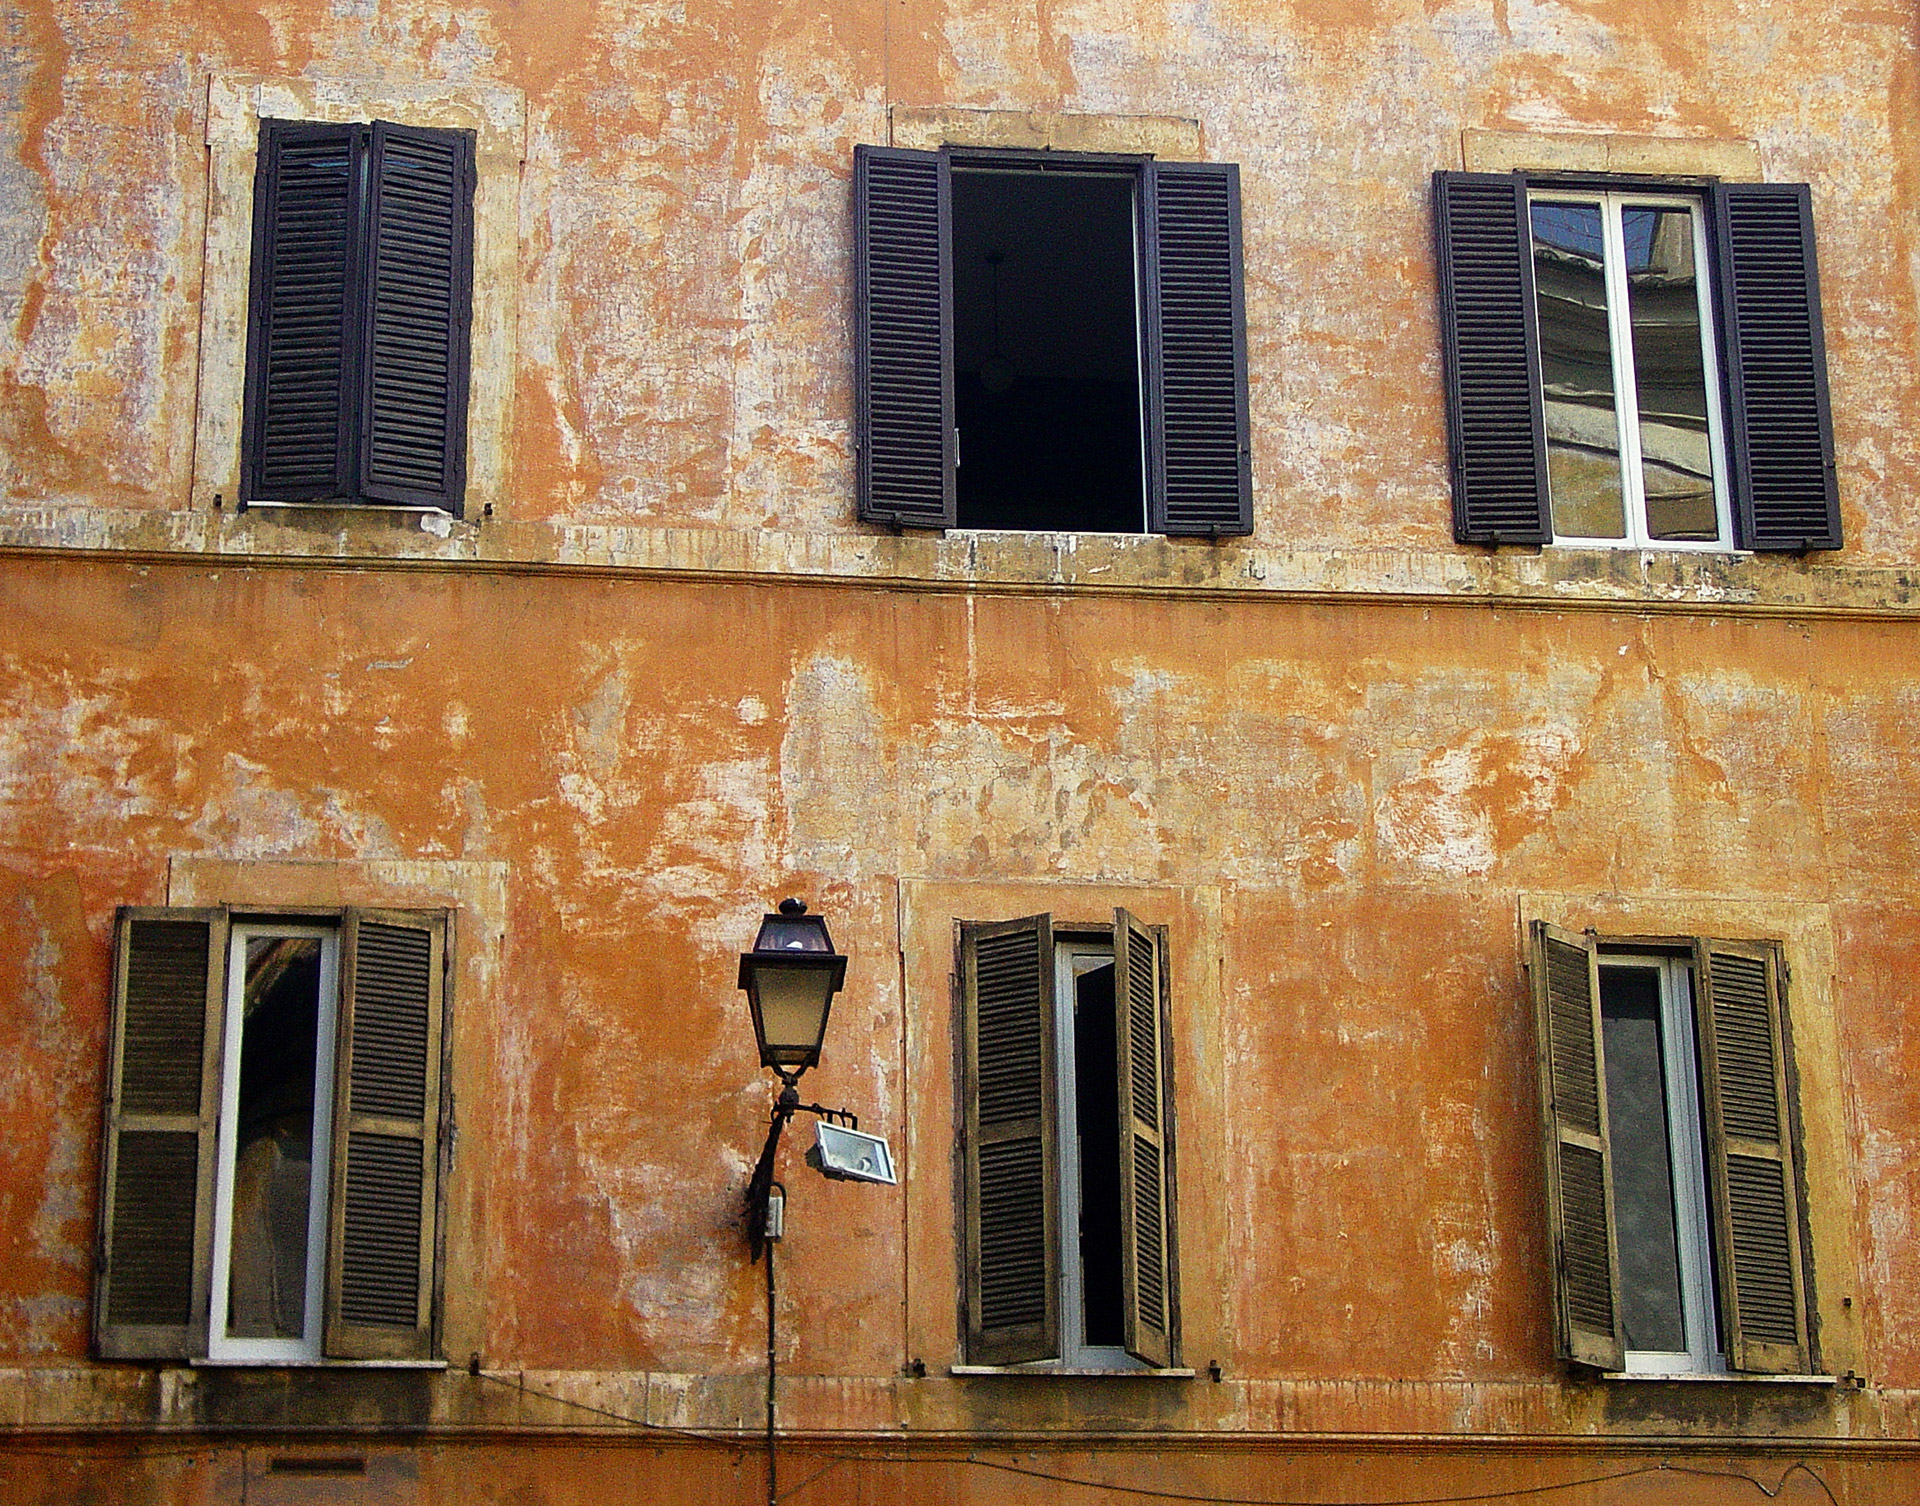 Włochy, Rzym, cykl okna, włoskie okna, podróże, podróże po Europie, fotografia Monika Turska